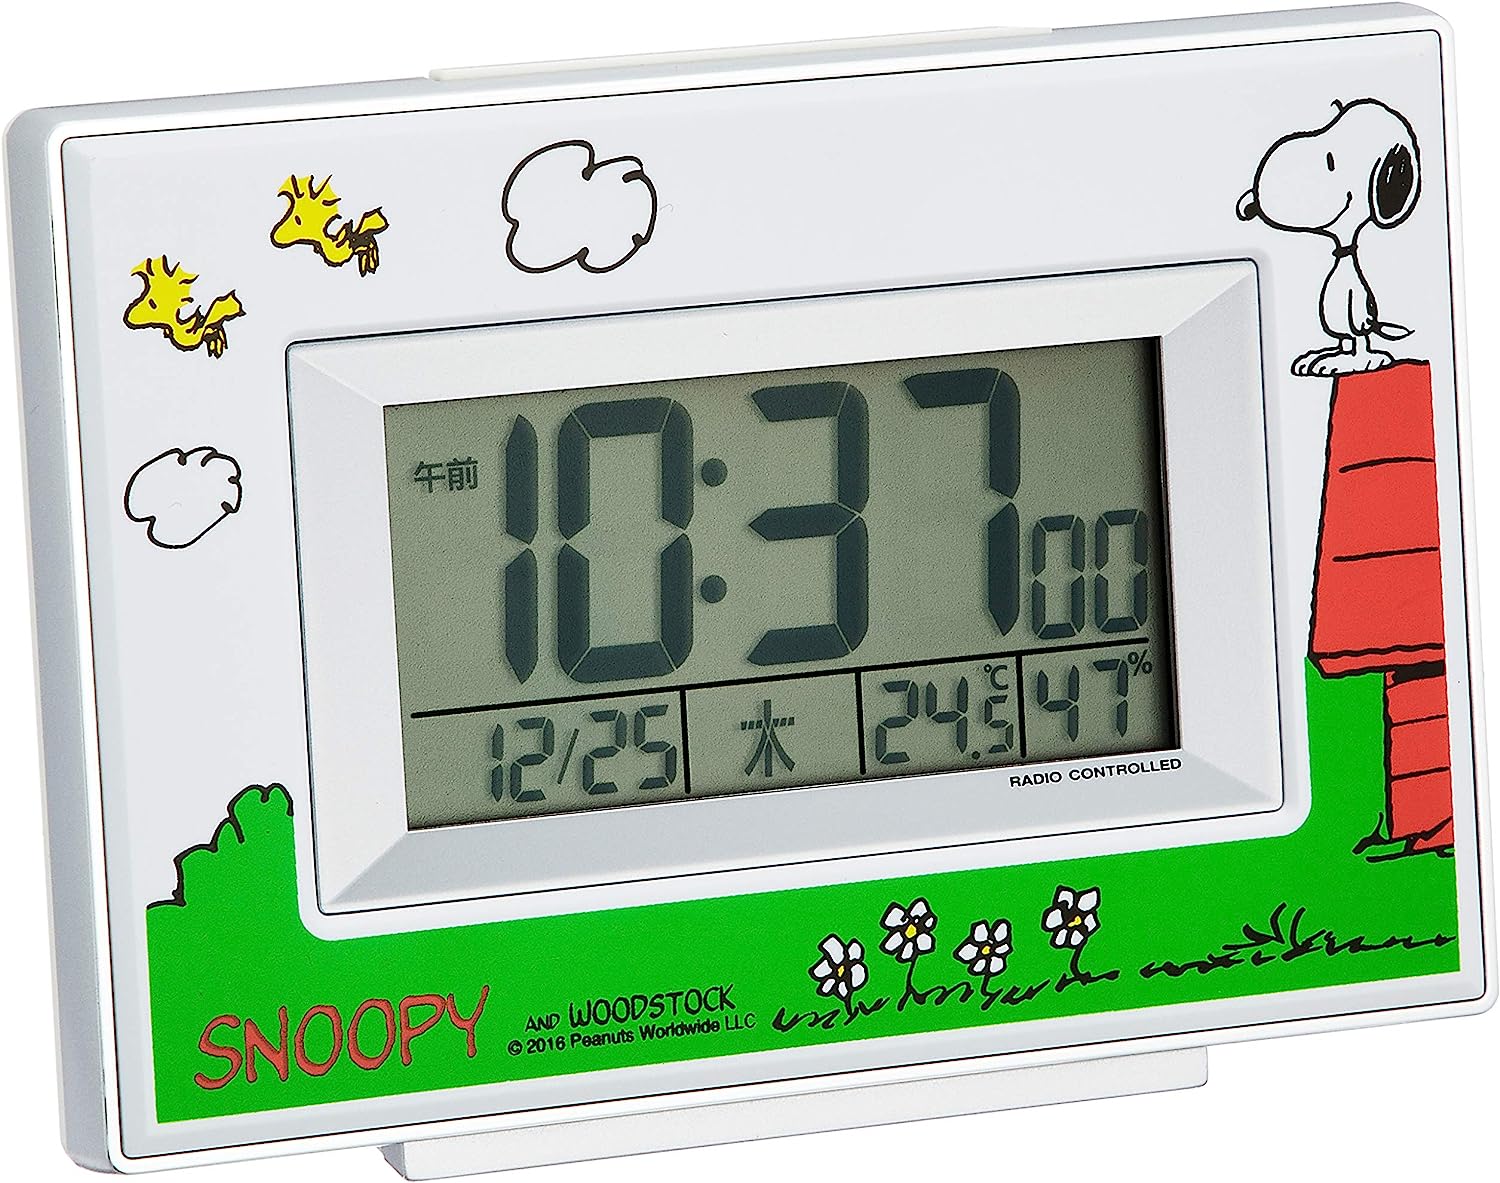 【日本代購】RHYTHM SNOOPY (史努比) 鬧鐘電波時鐘人物數字溫度濕度星期日曆顯示白色史努比R187 8RZ187-M03